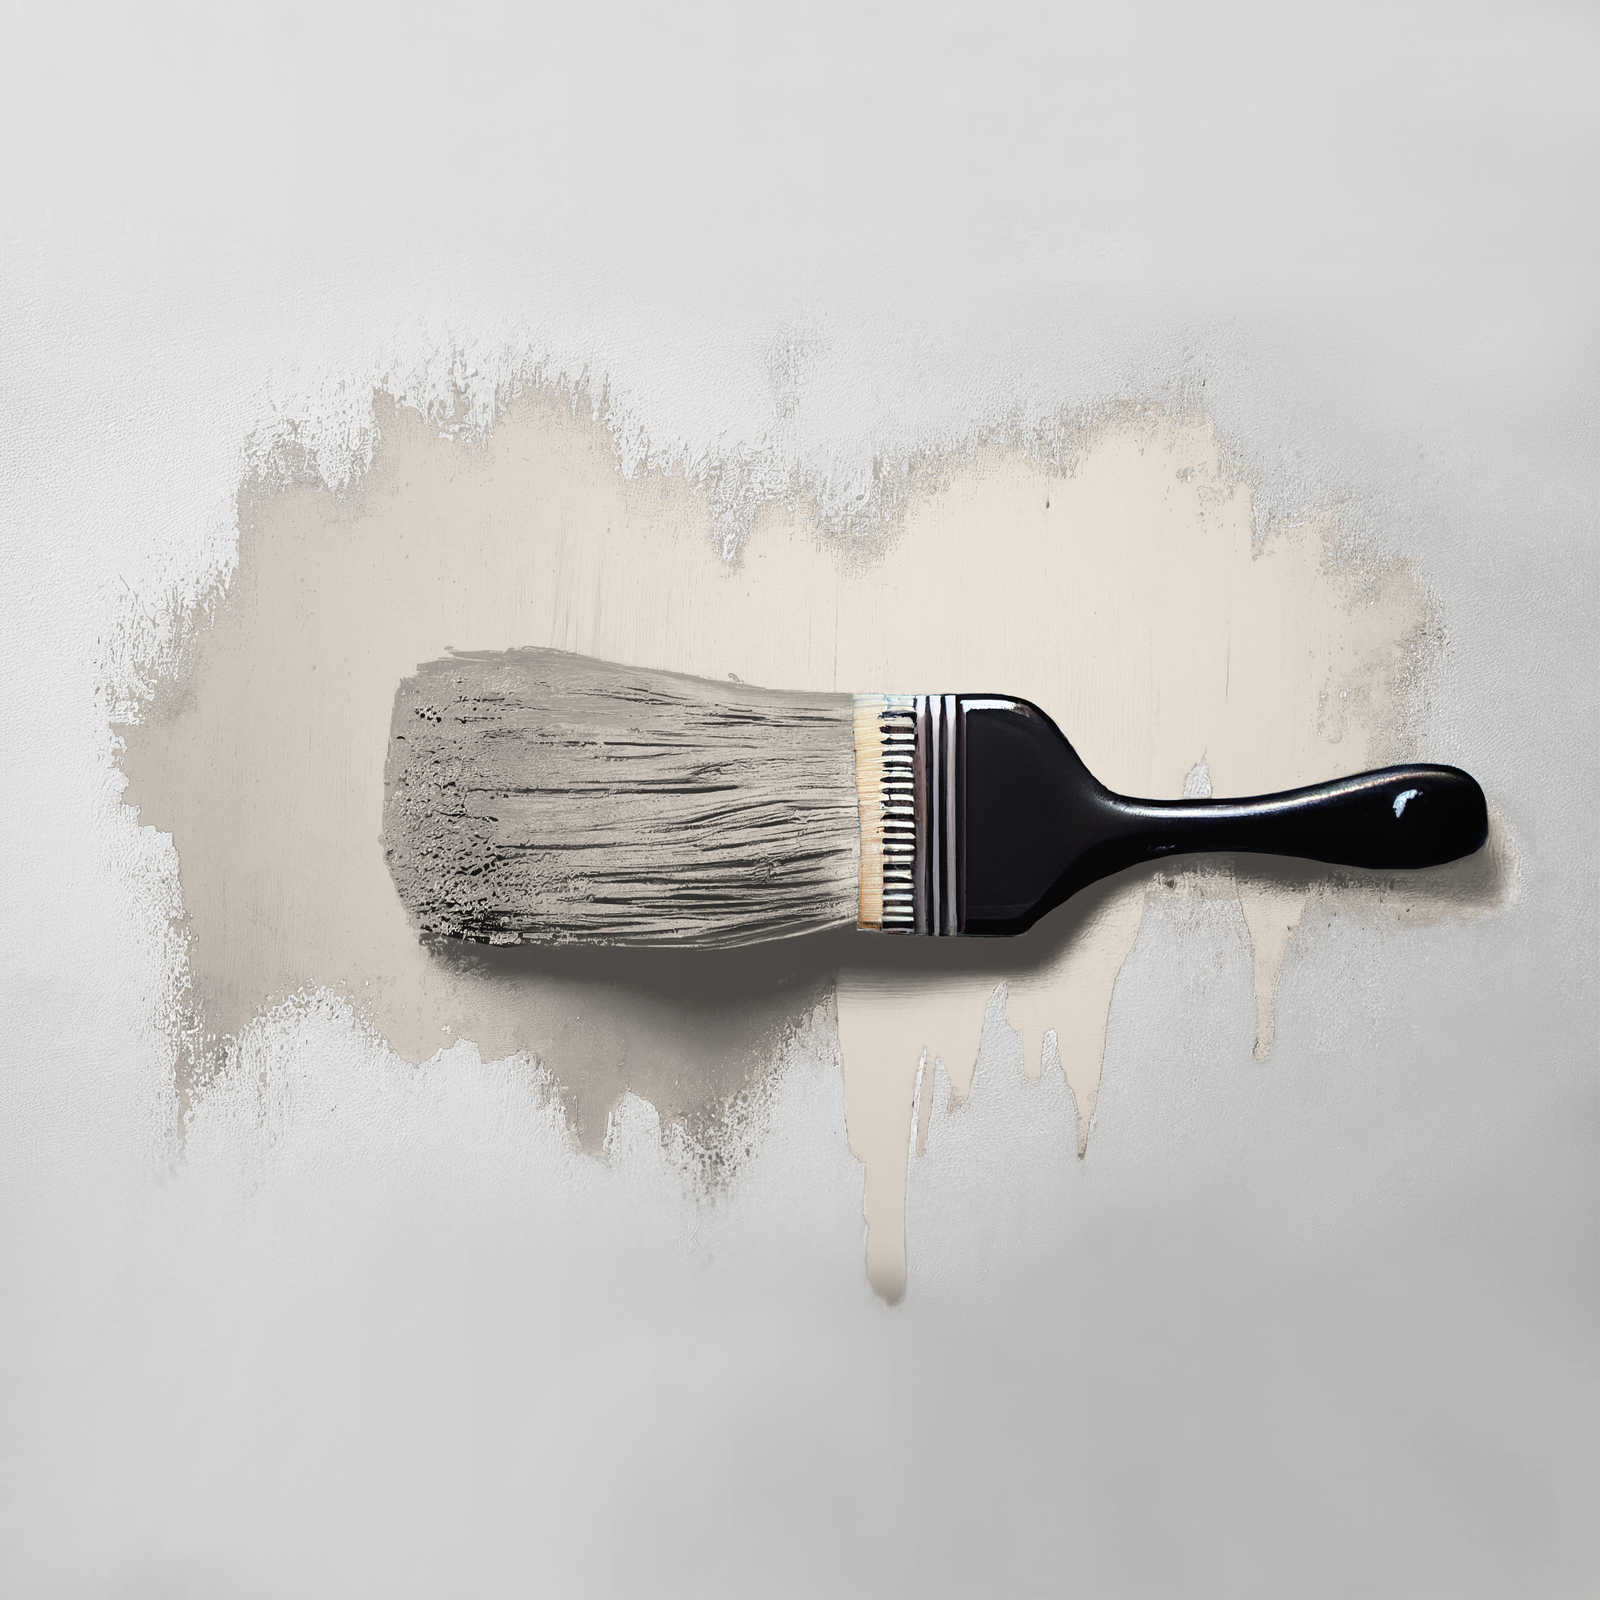             Pintura mural TCK6019 »Melty Marzipan« en beige delicado – 2,5 litro
        